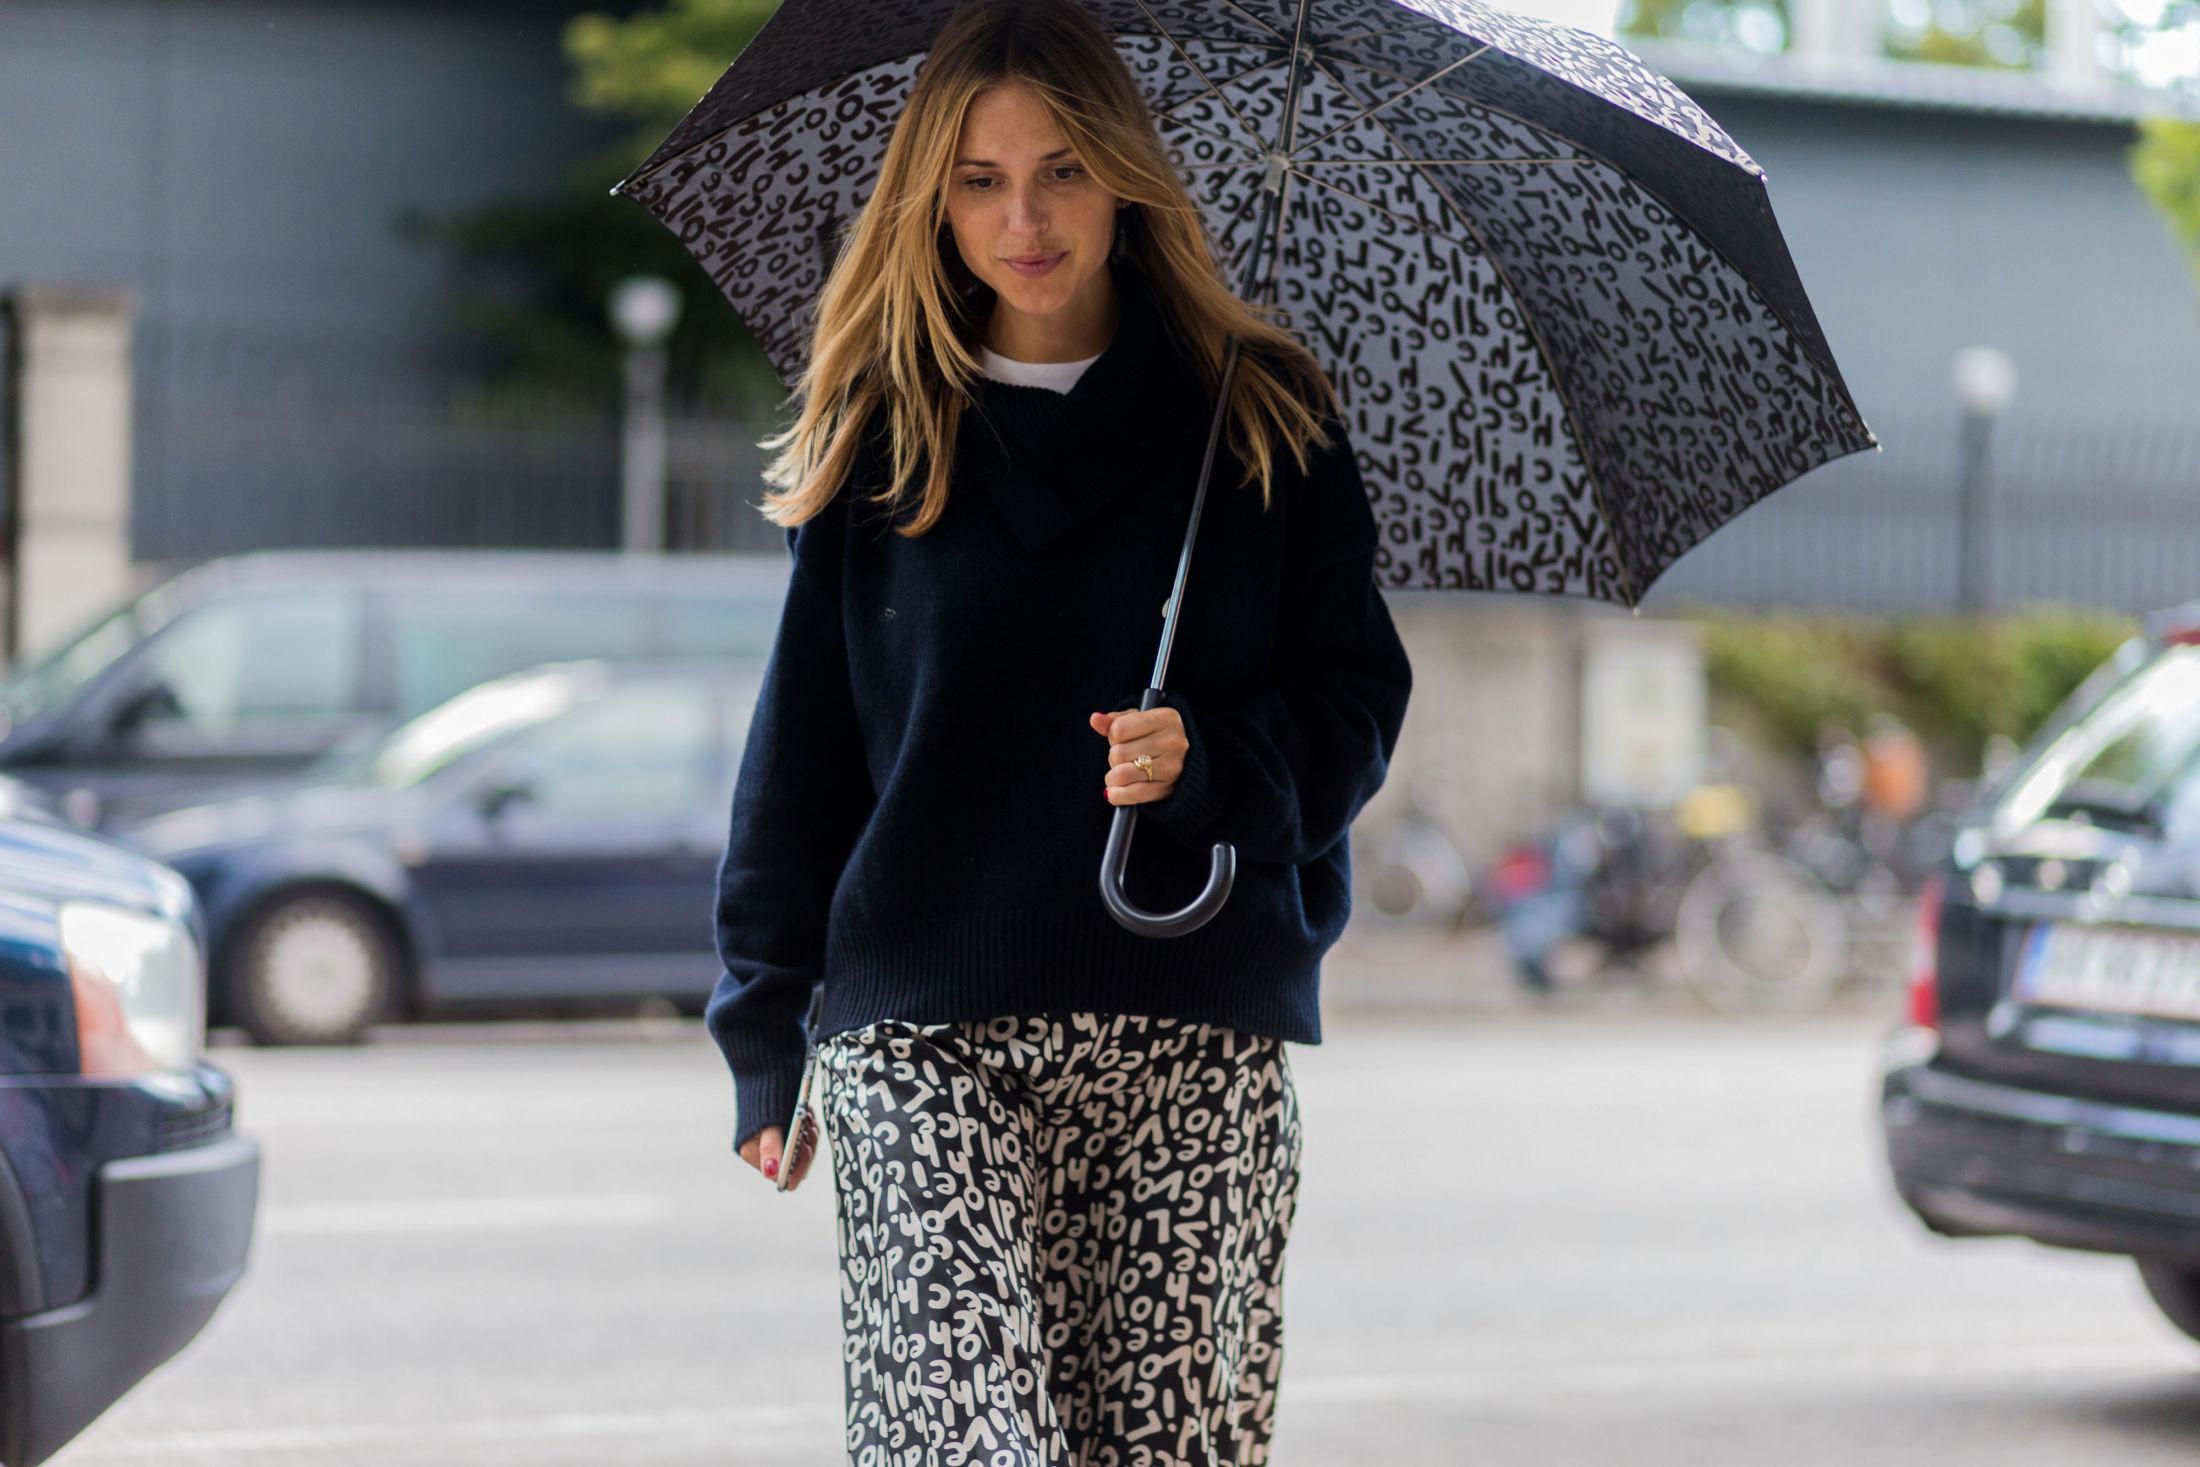 DUSKREGN: Danske Pernille Teisbæk vet hvordan man kler seg, selv i regnvær. Foto: Christian Vierig/Getty Images